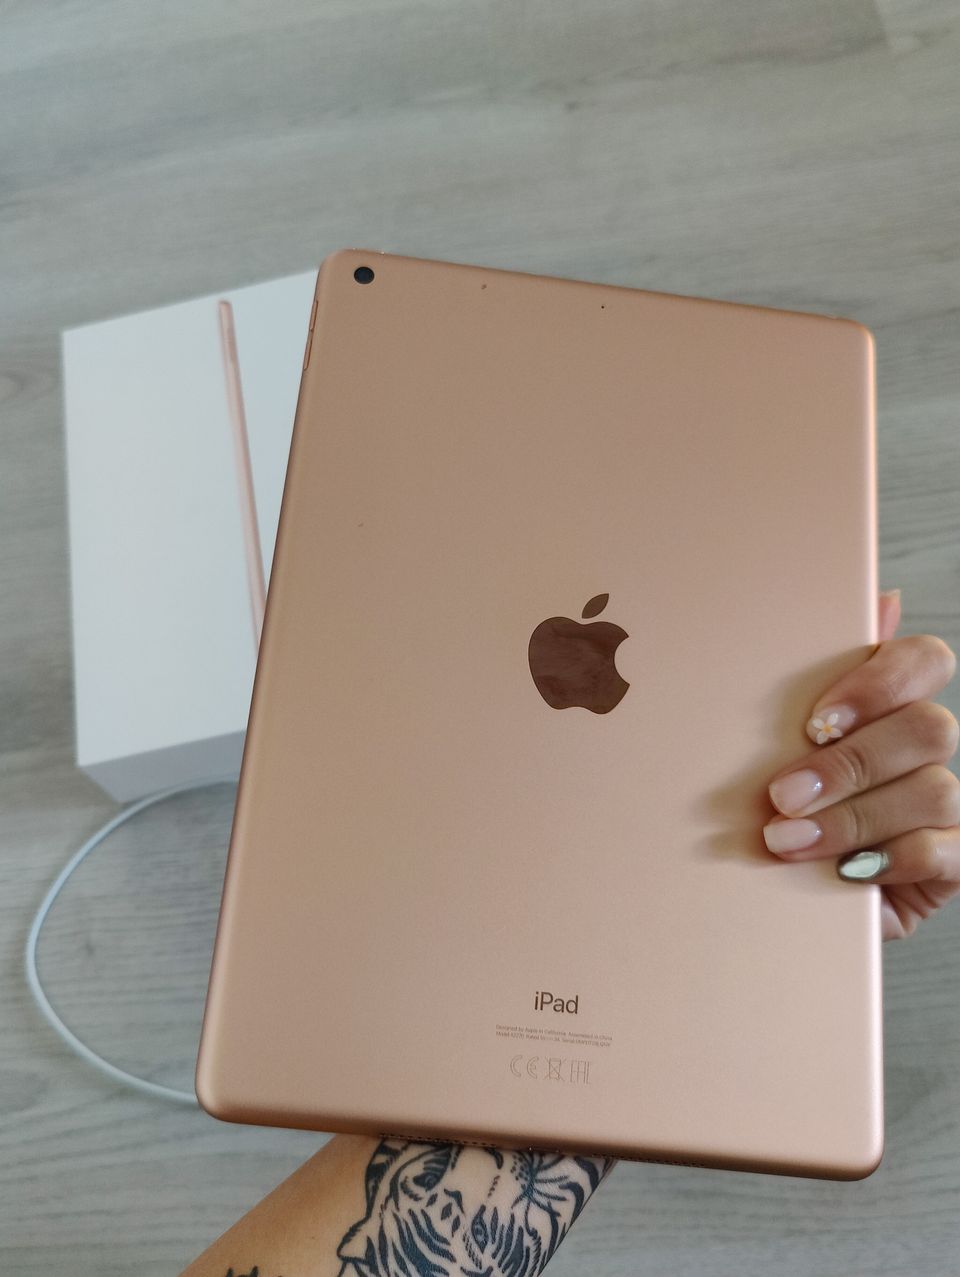 iPad 8th gen 32GB wi-fi (gold) + Apple pencil